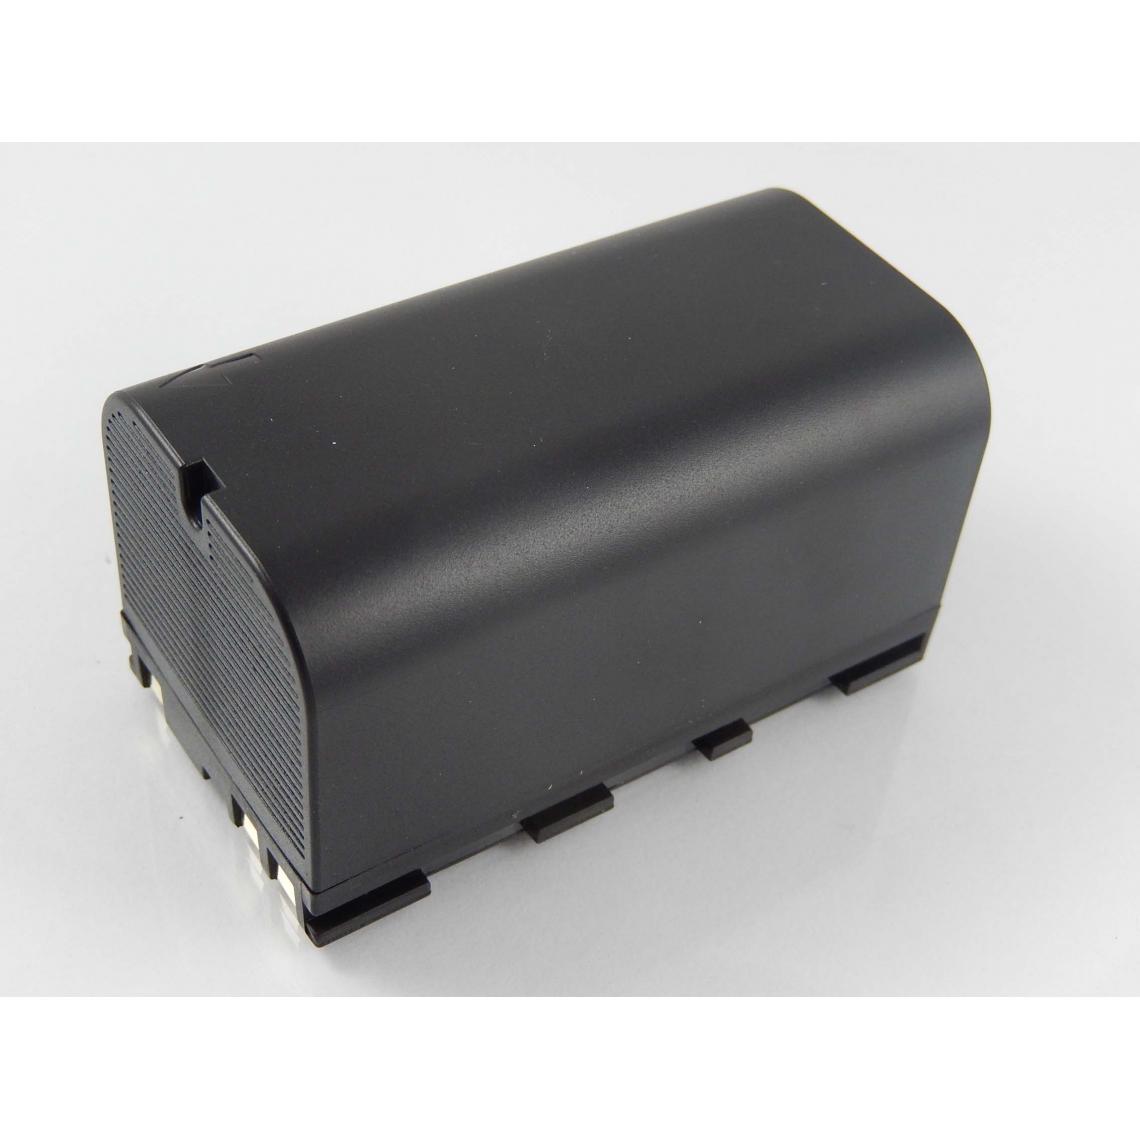 Vhbw - vhbw Batterie compatible avec Leica Builder 500 dispositif de mesure laser, outil de mesure (5600mAh, 7,4V, Li-ion) - Piles rechargeables